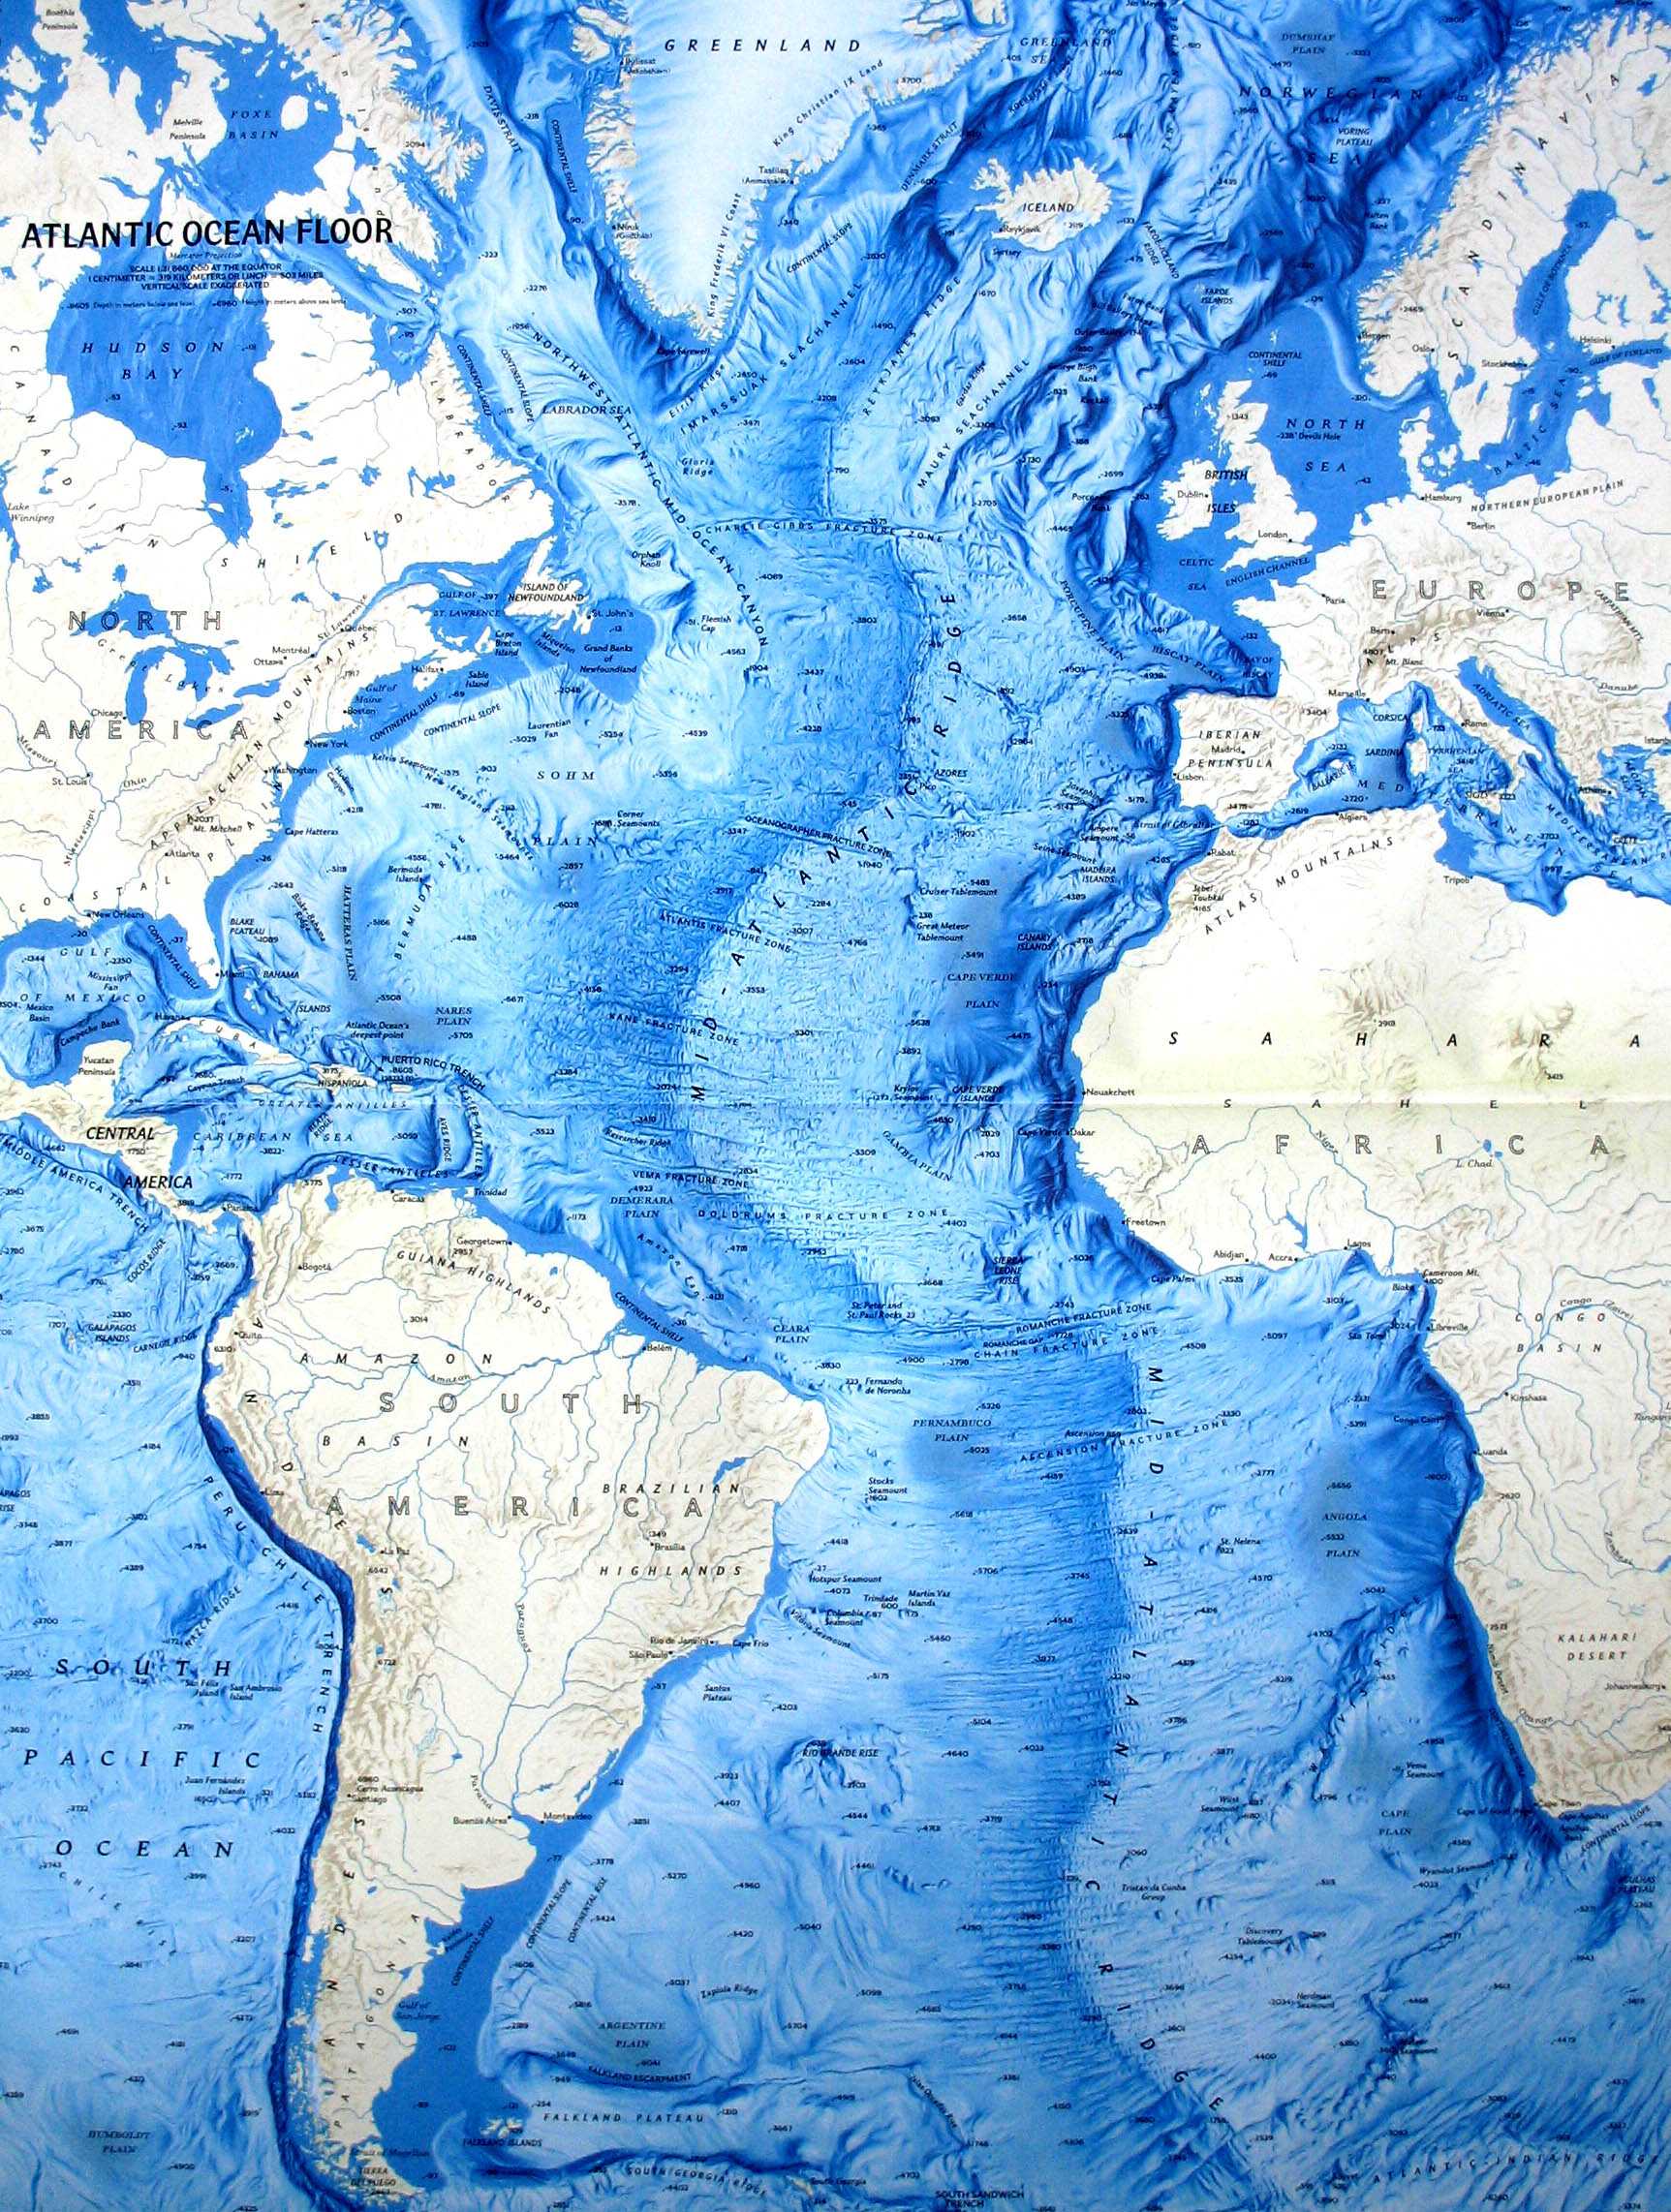 Течения атлантического океана — северные и южные, особенности и карта — природа мира